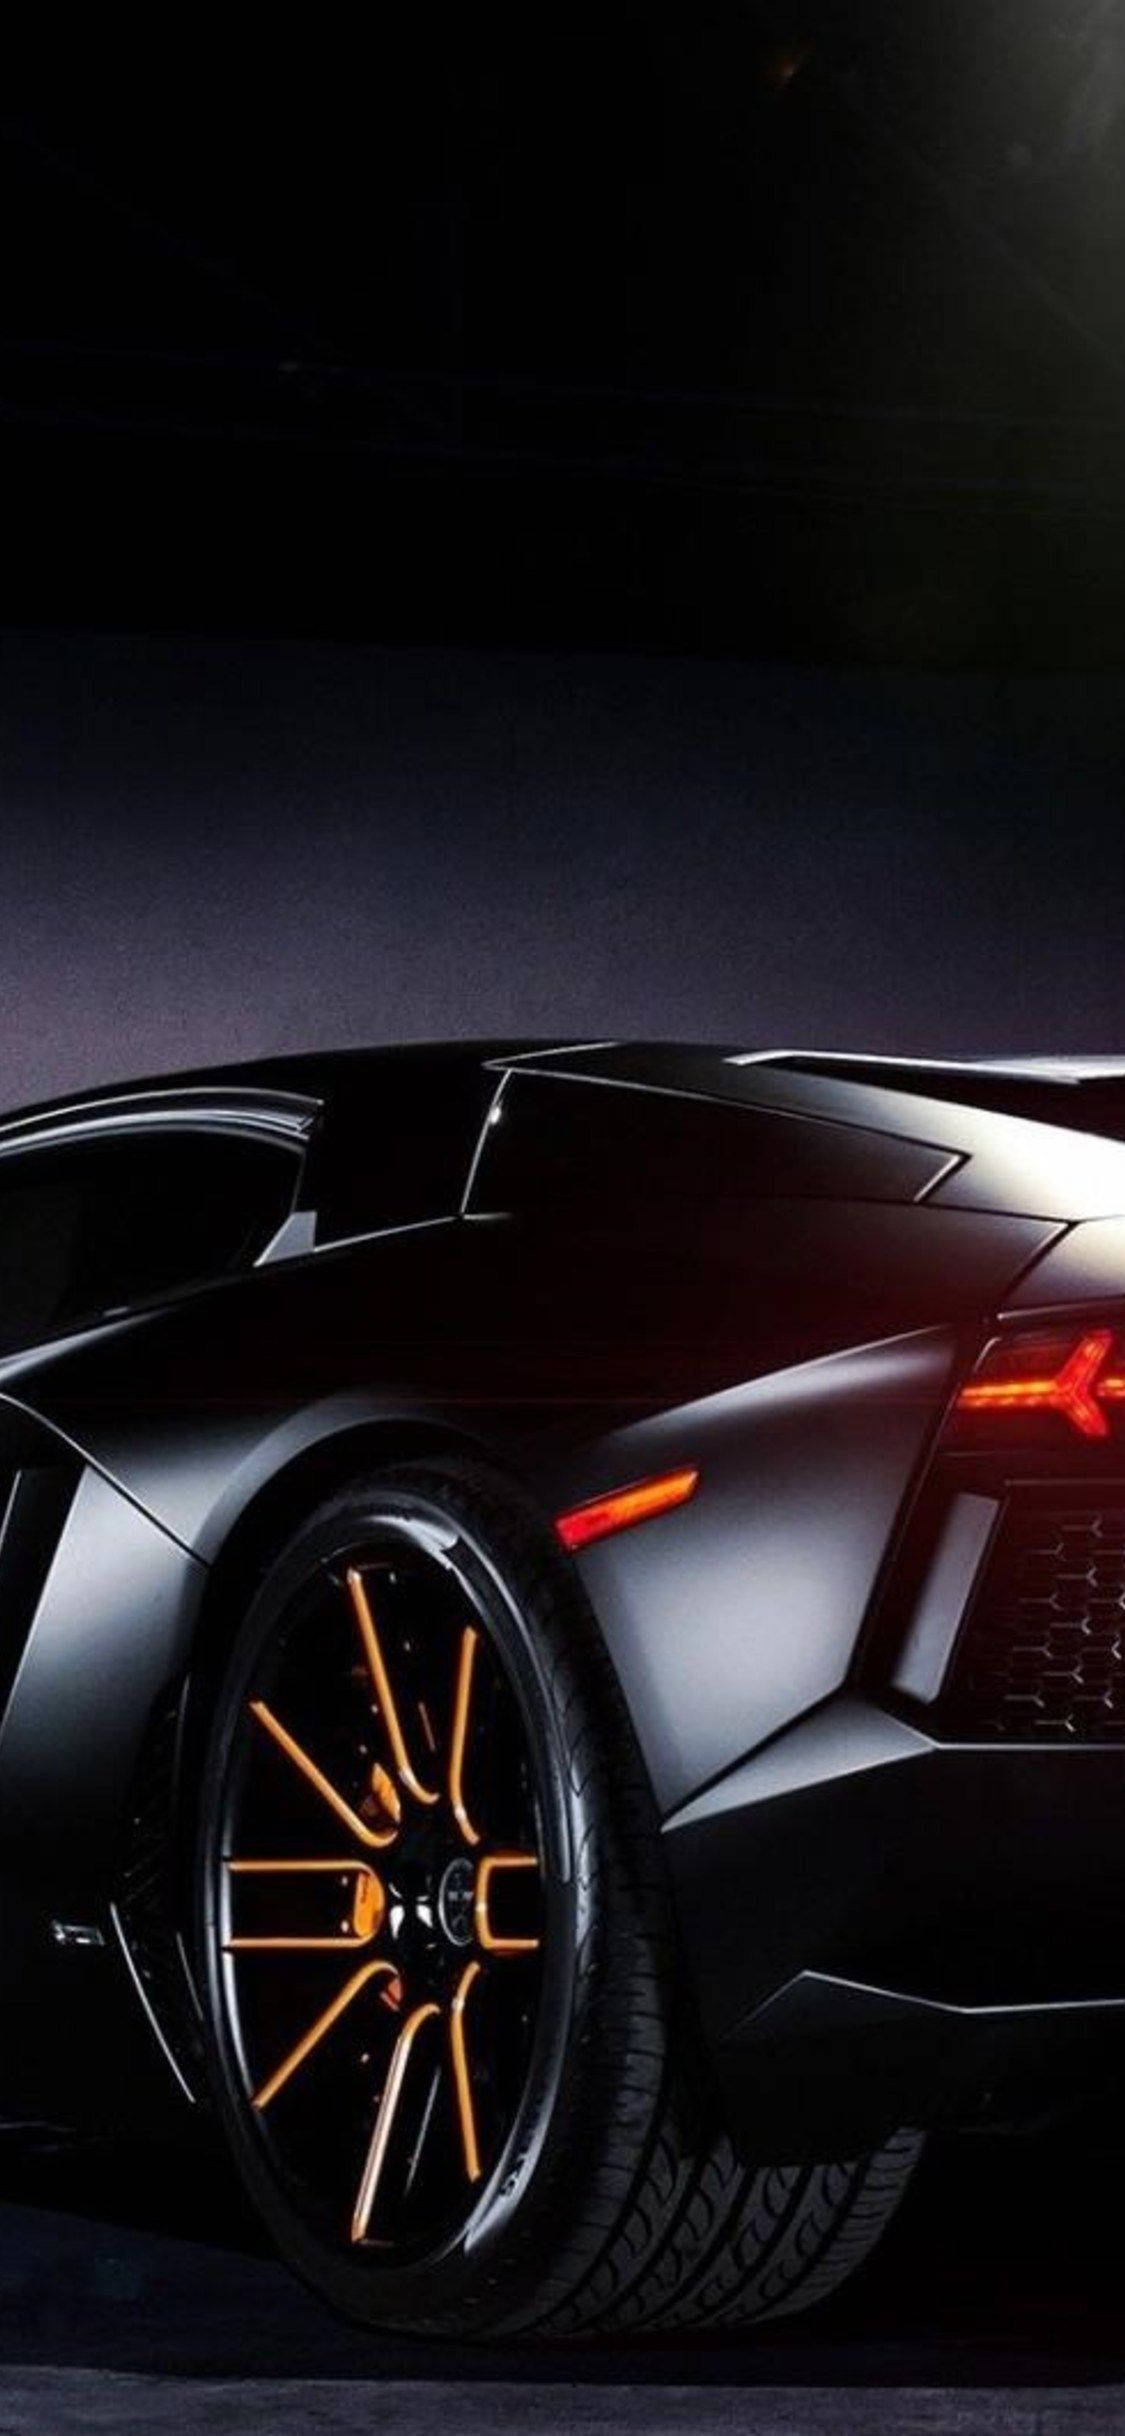 Awesome Iphone Lamborghini Theme Background